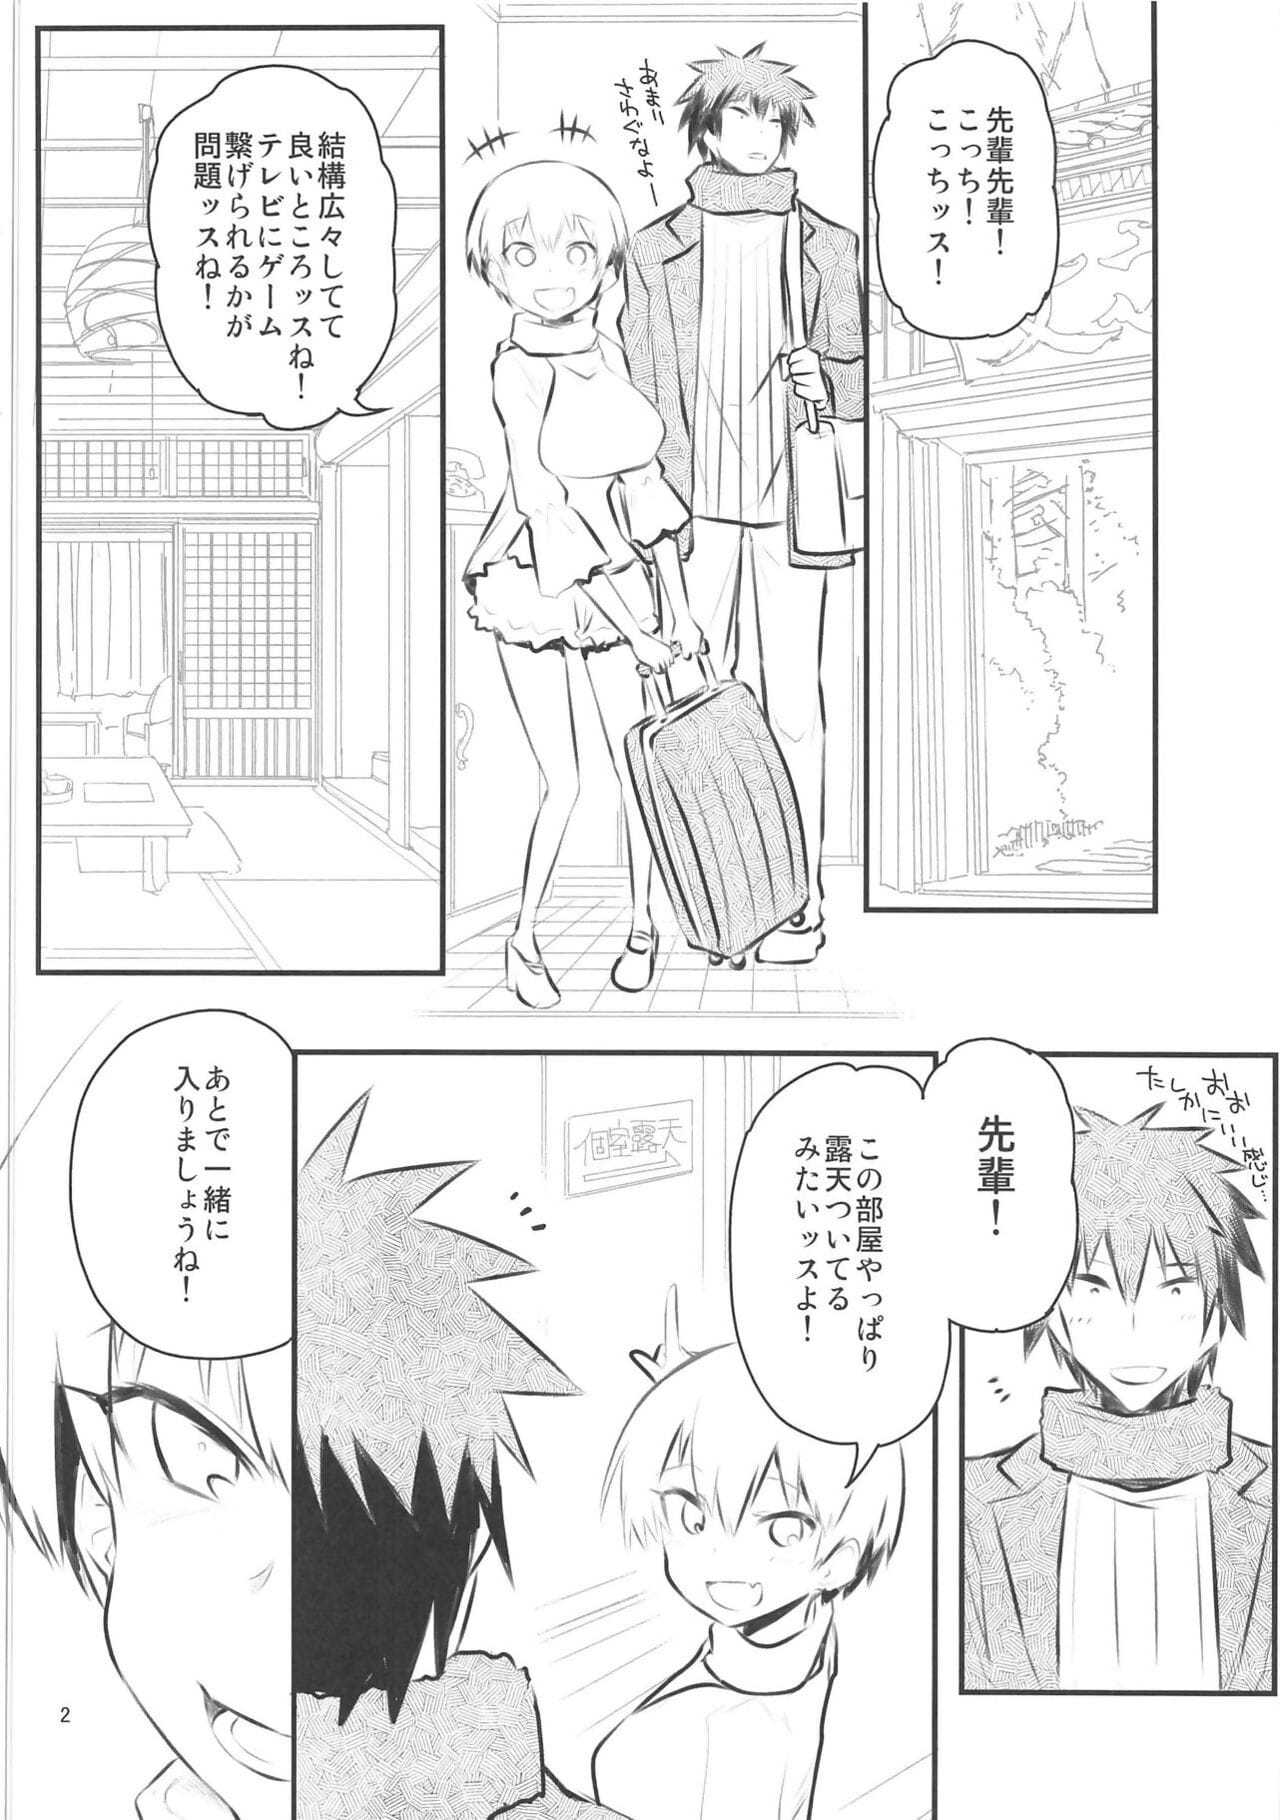 Uzaki-chan wa H Shitai! 2 page 1